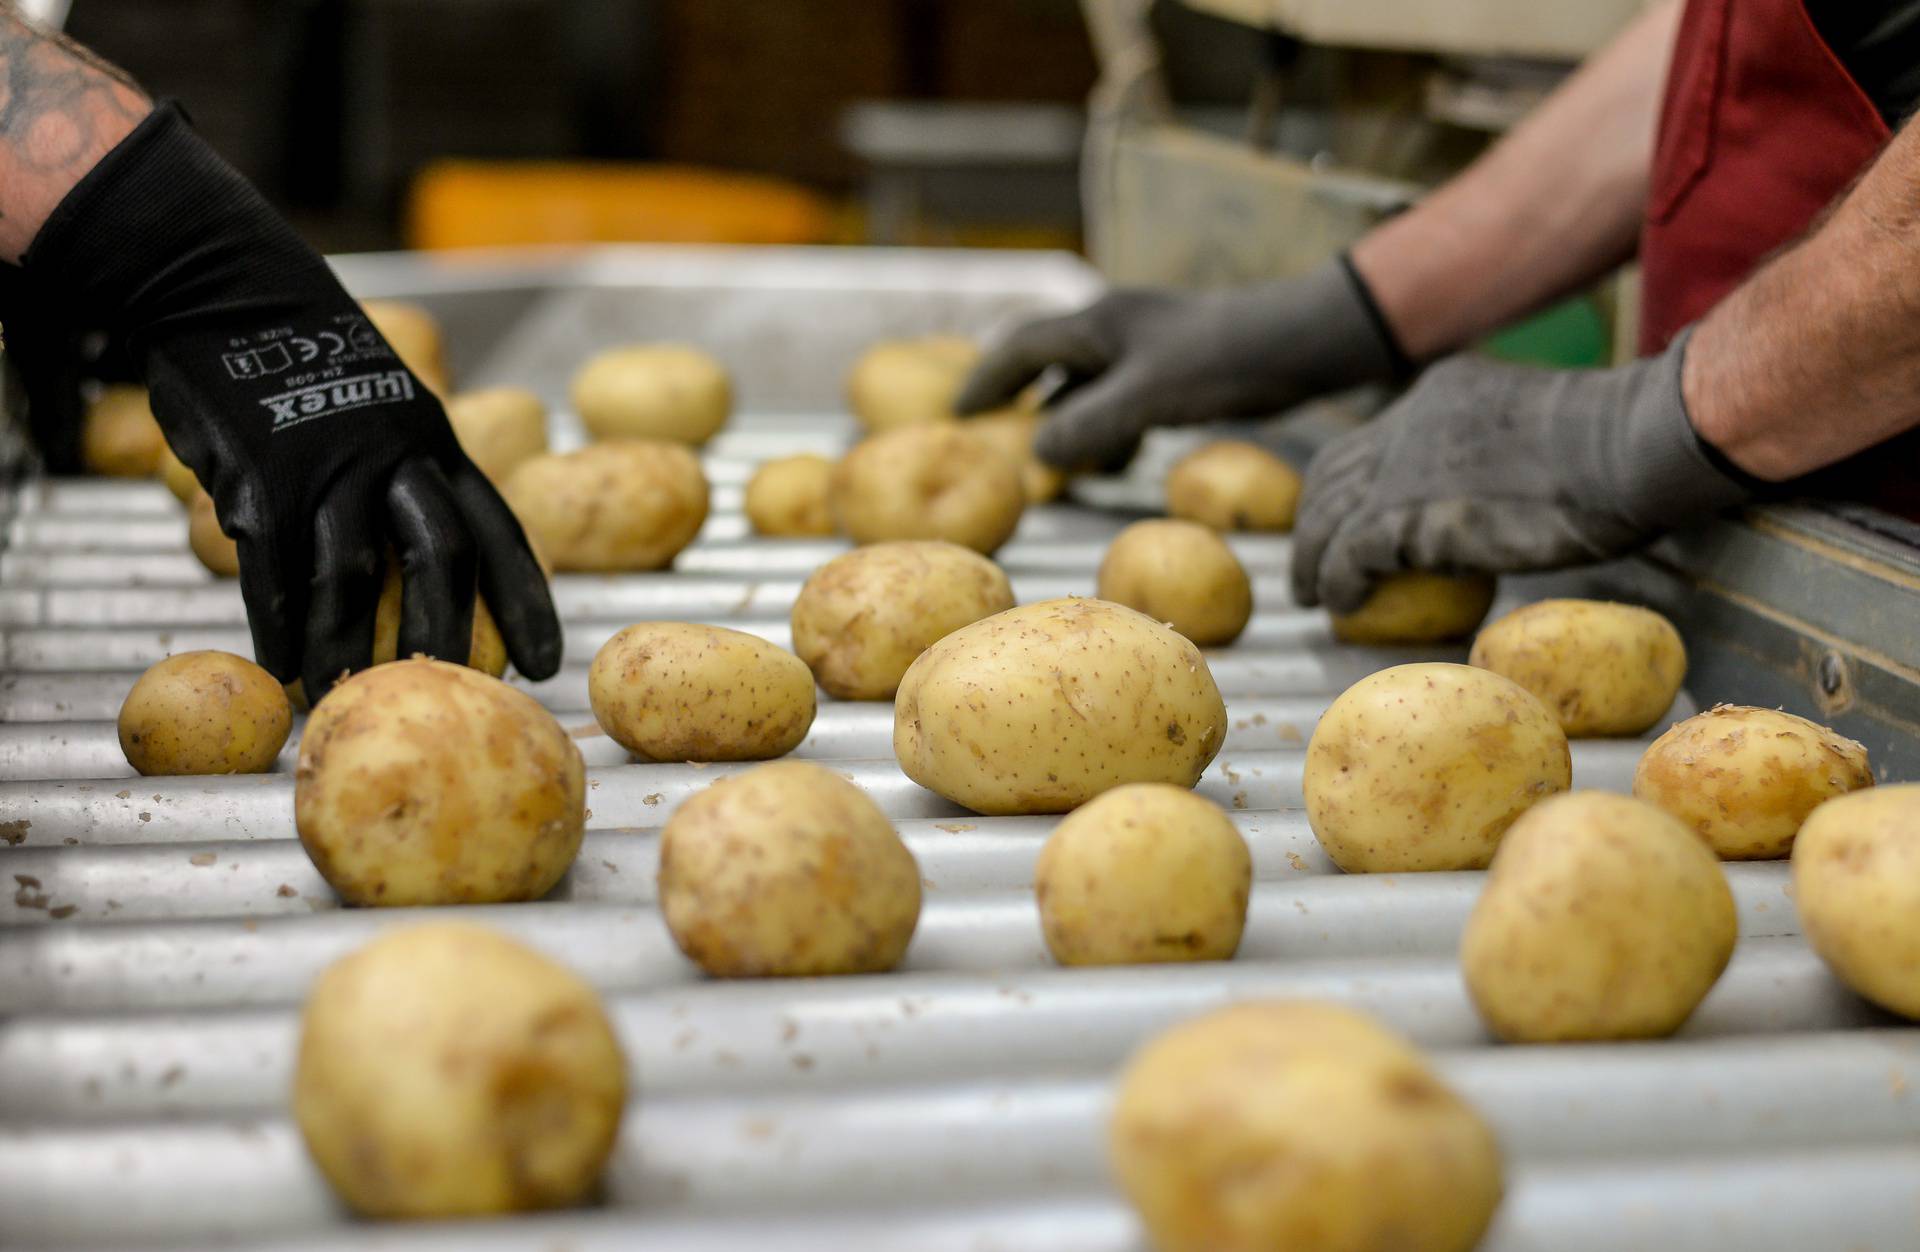 Ova međimurska tvrtka oduševit će vas svojom pričom o uspjehu, a saznat ćete i kako nastaje krumpir koji svakodnevno jedemo